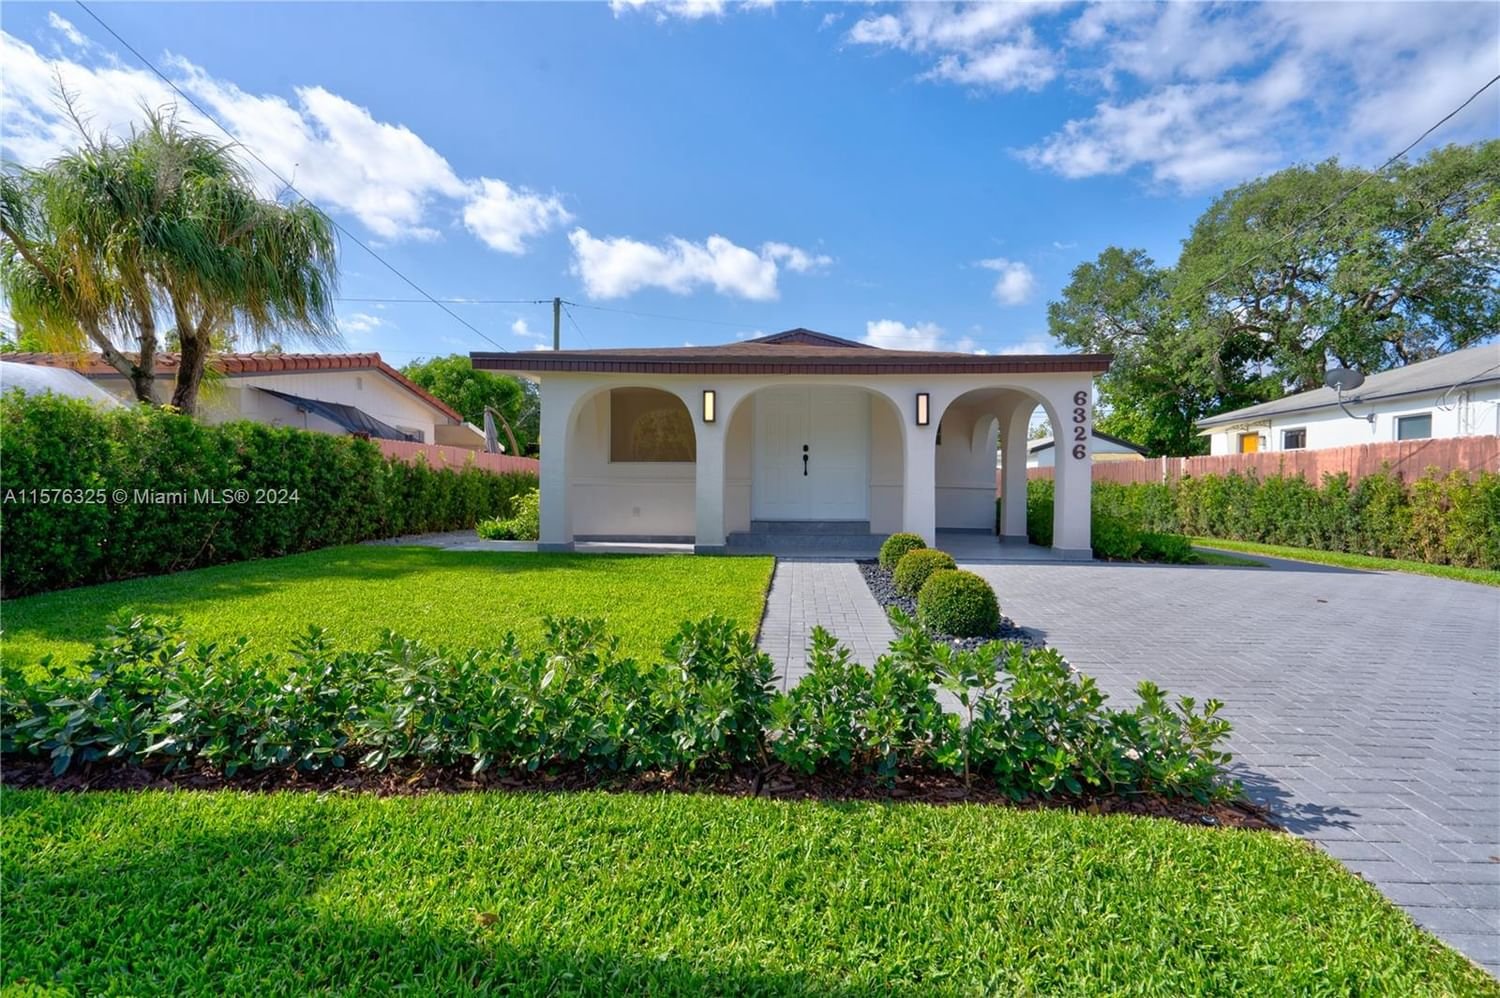 Real estate property located at 6326 35th St, Miami-Dade County, CORAL VILLAS REV, Miami, FL